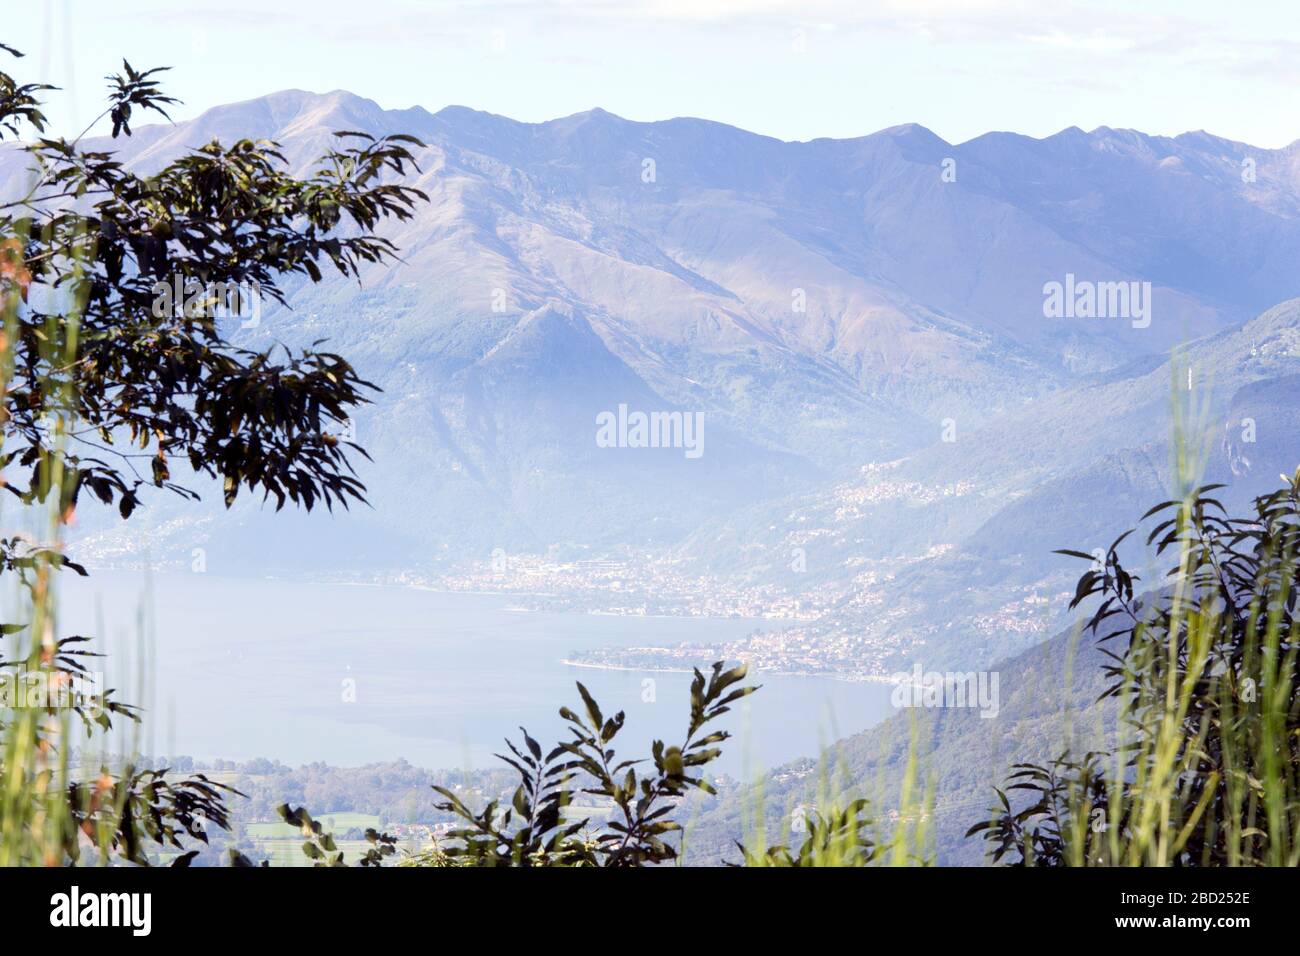 View of Mezzola lake from mountain, Italy Stock Photo